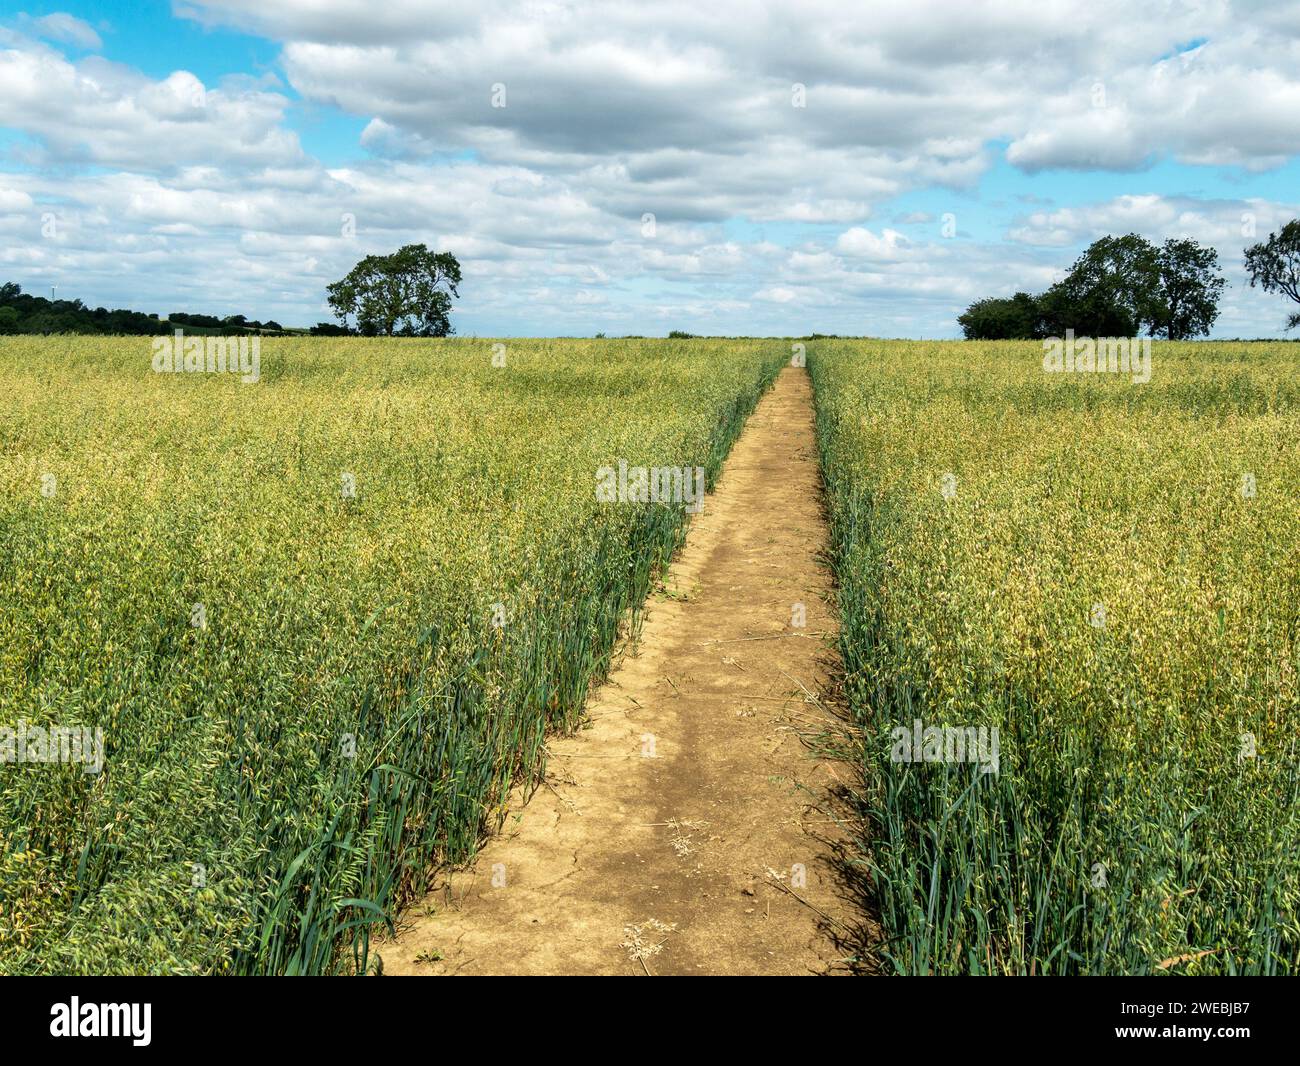 Sentier bien entretenu, droit et clair à travers le champ agricole d'avoine, juillet, près de Burrough on the Hill, Leicestershire, Angleterre, Royaume-Uni Banque D'Images